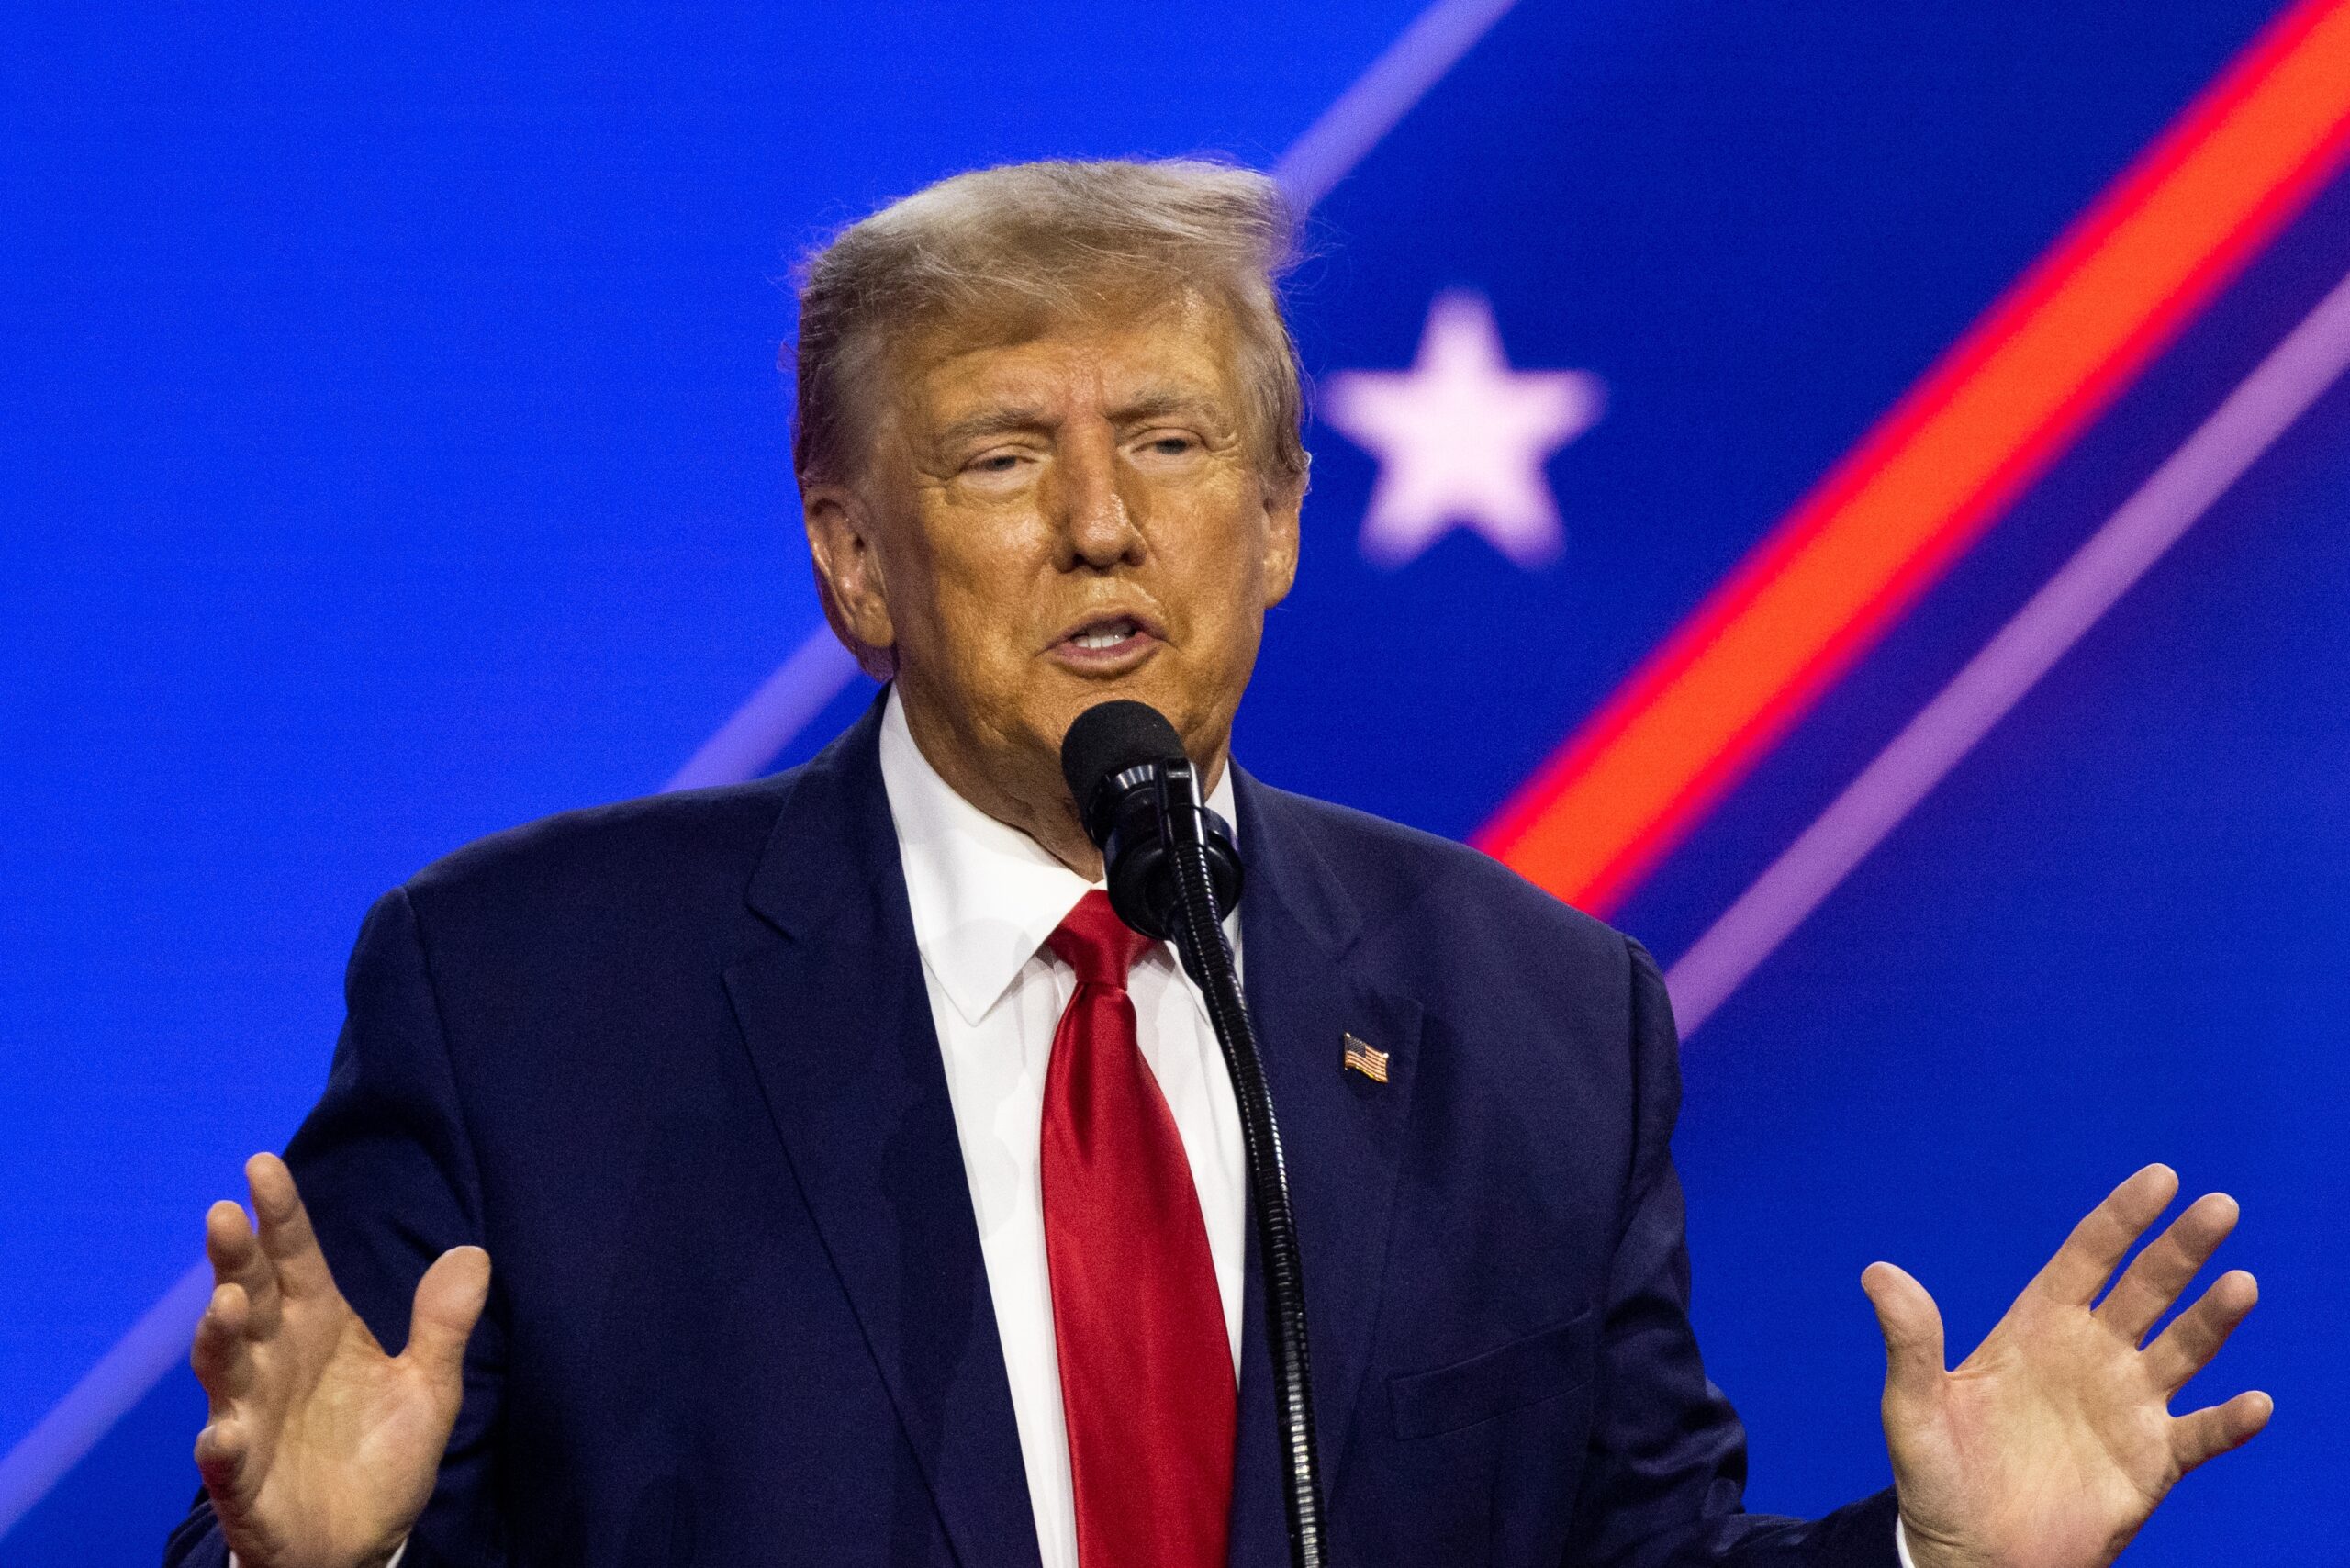 Donald Trump promite că nu va permite niciodată CBDC-urile dacă va fi ales președinte - Unchained